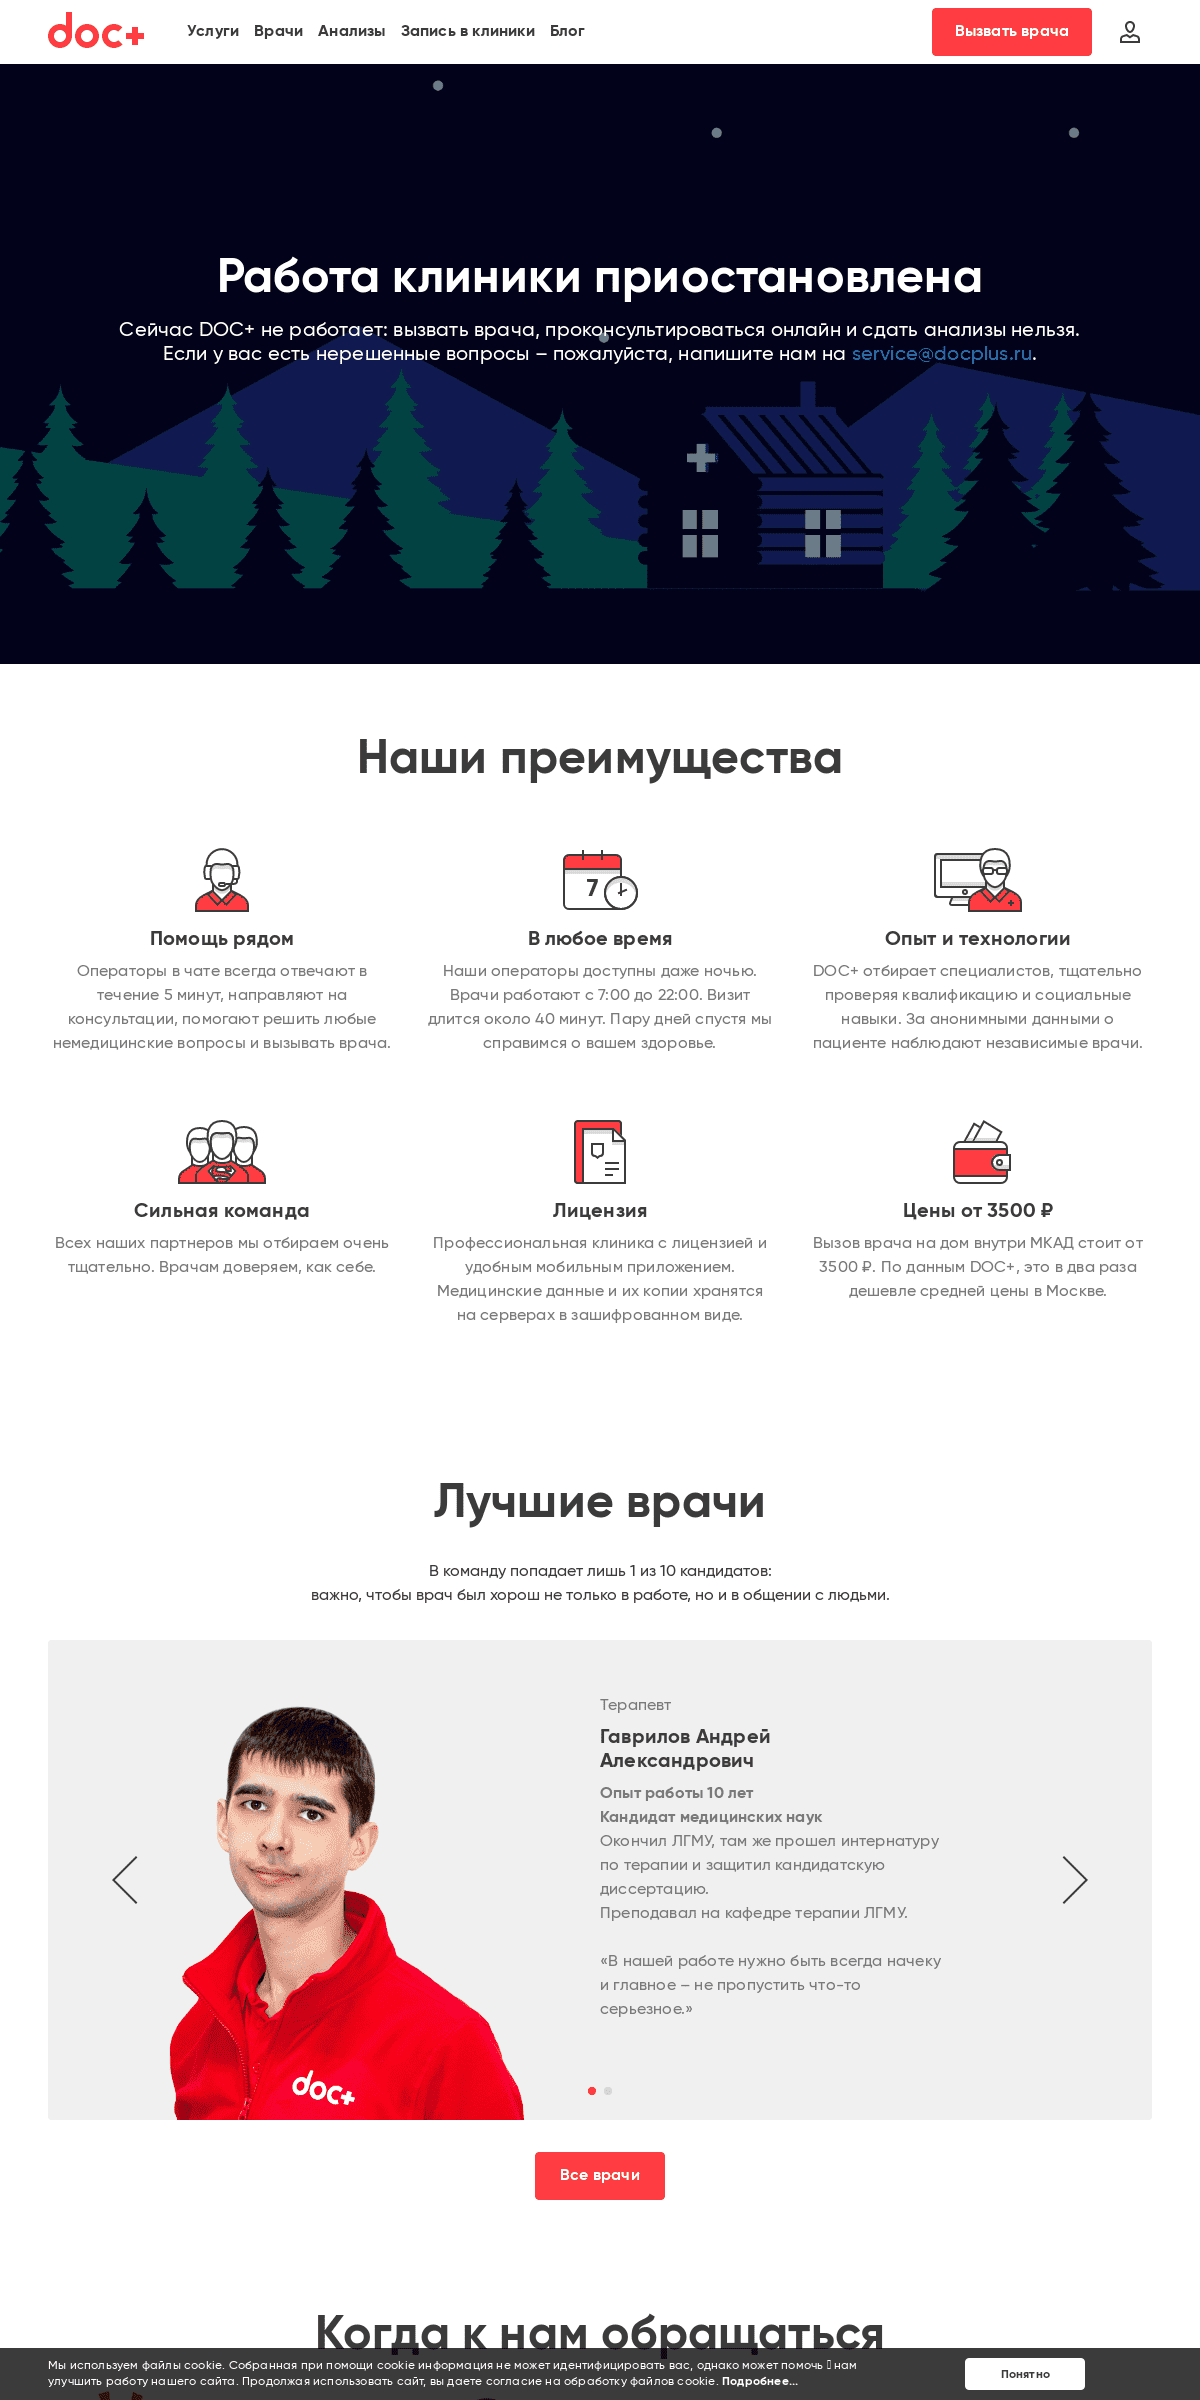 A complete backup of docplus.ru